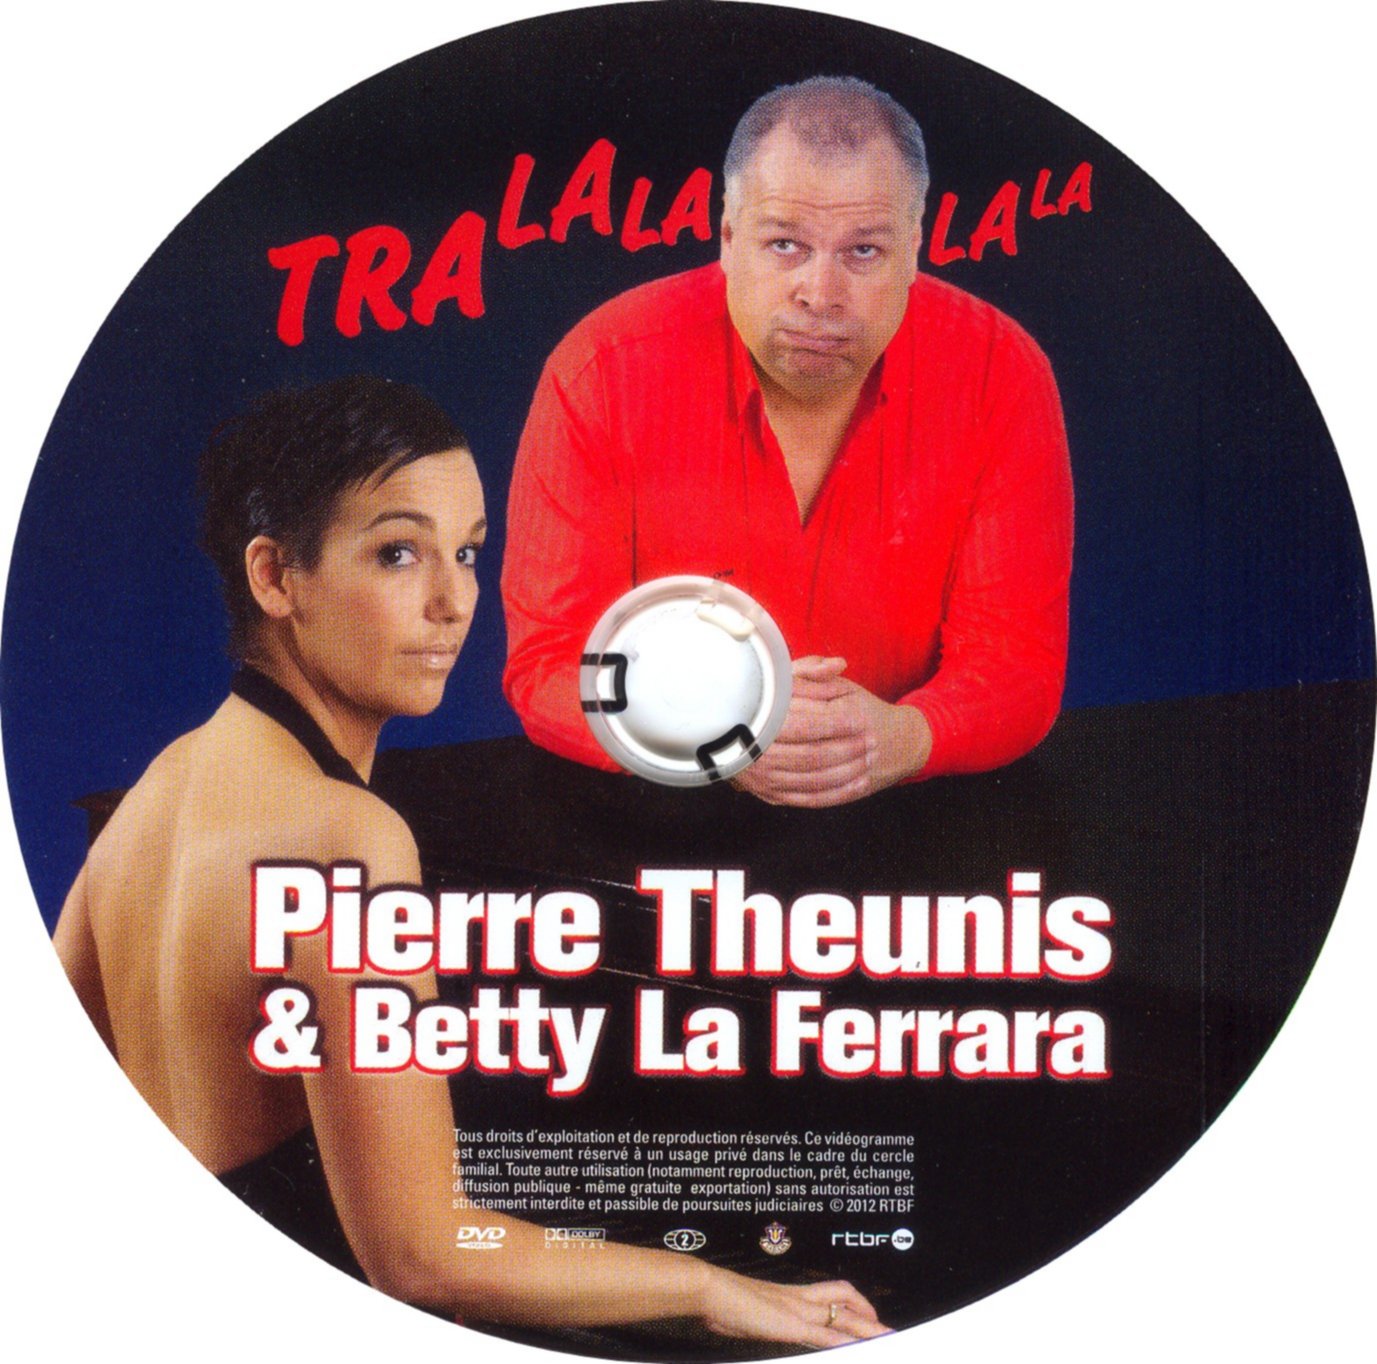 Pierre Theunis & Betty La Ferrara